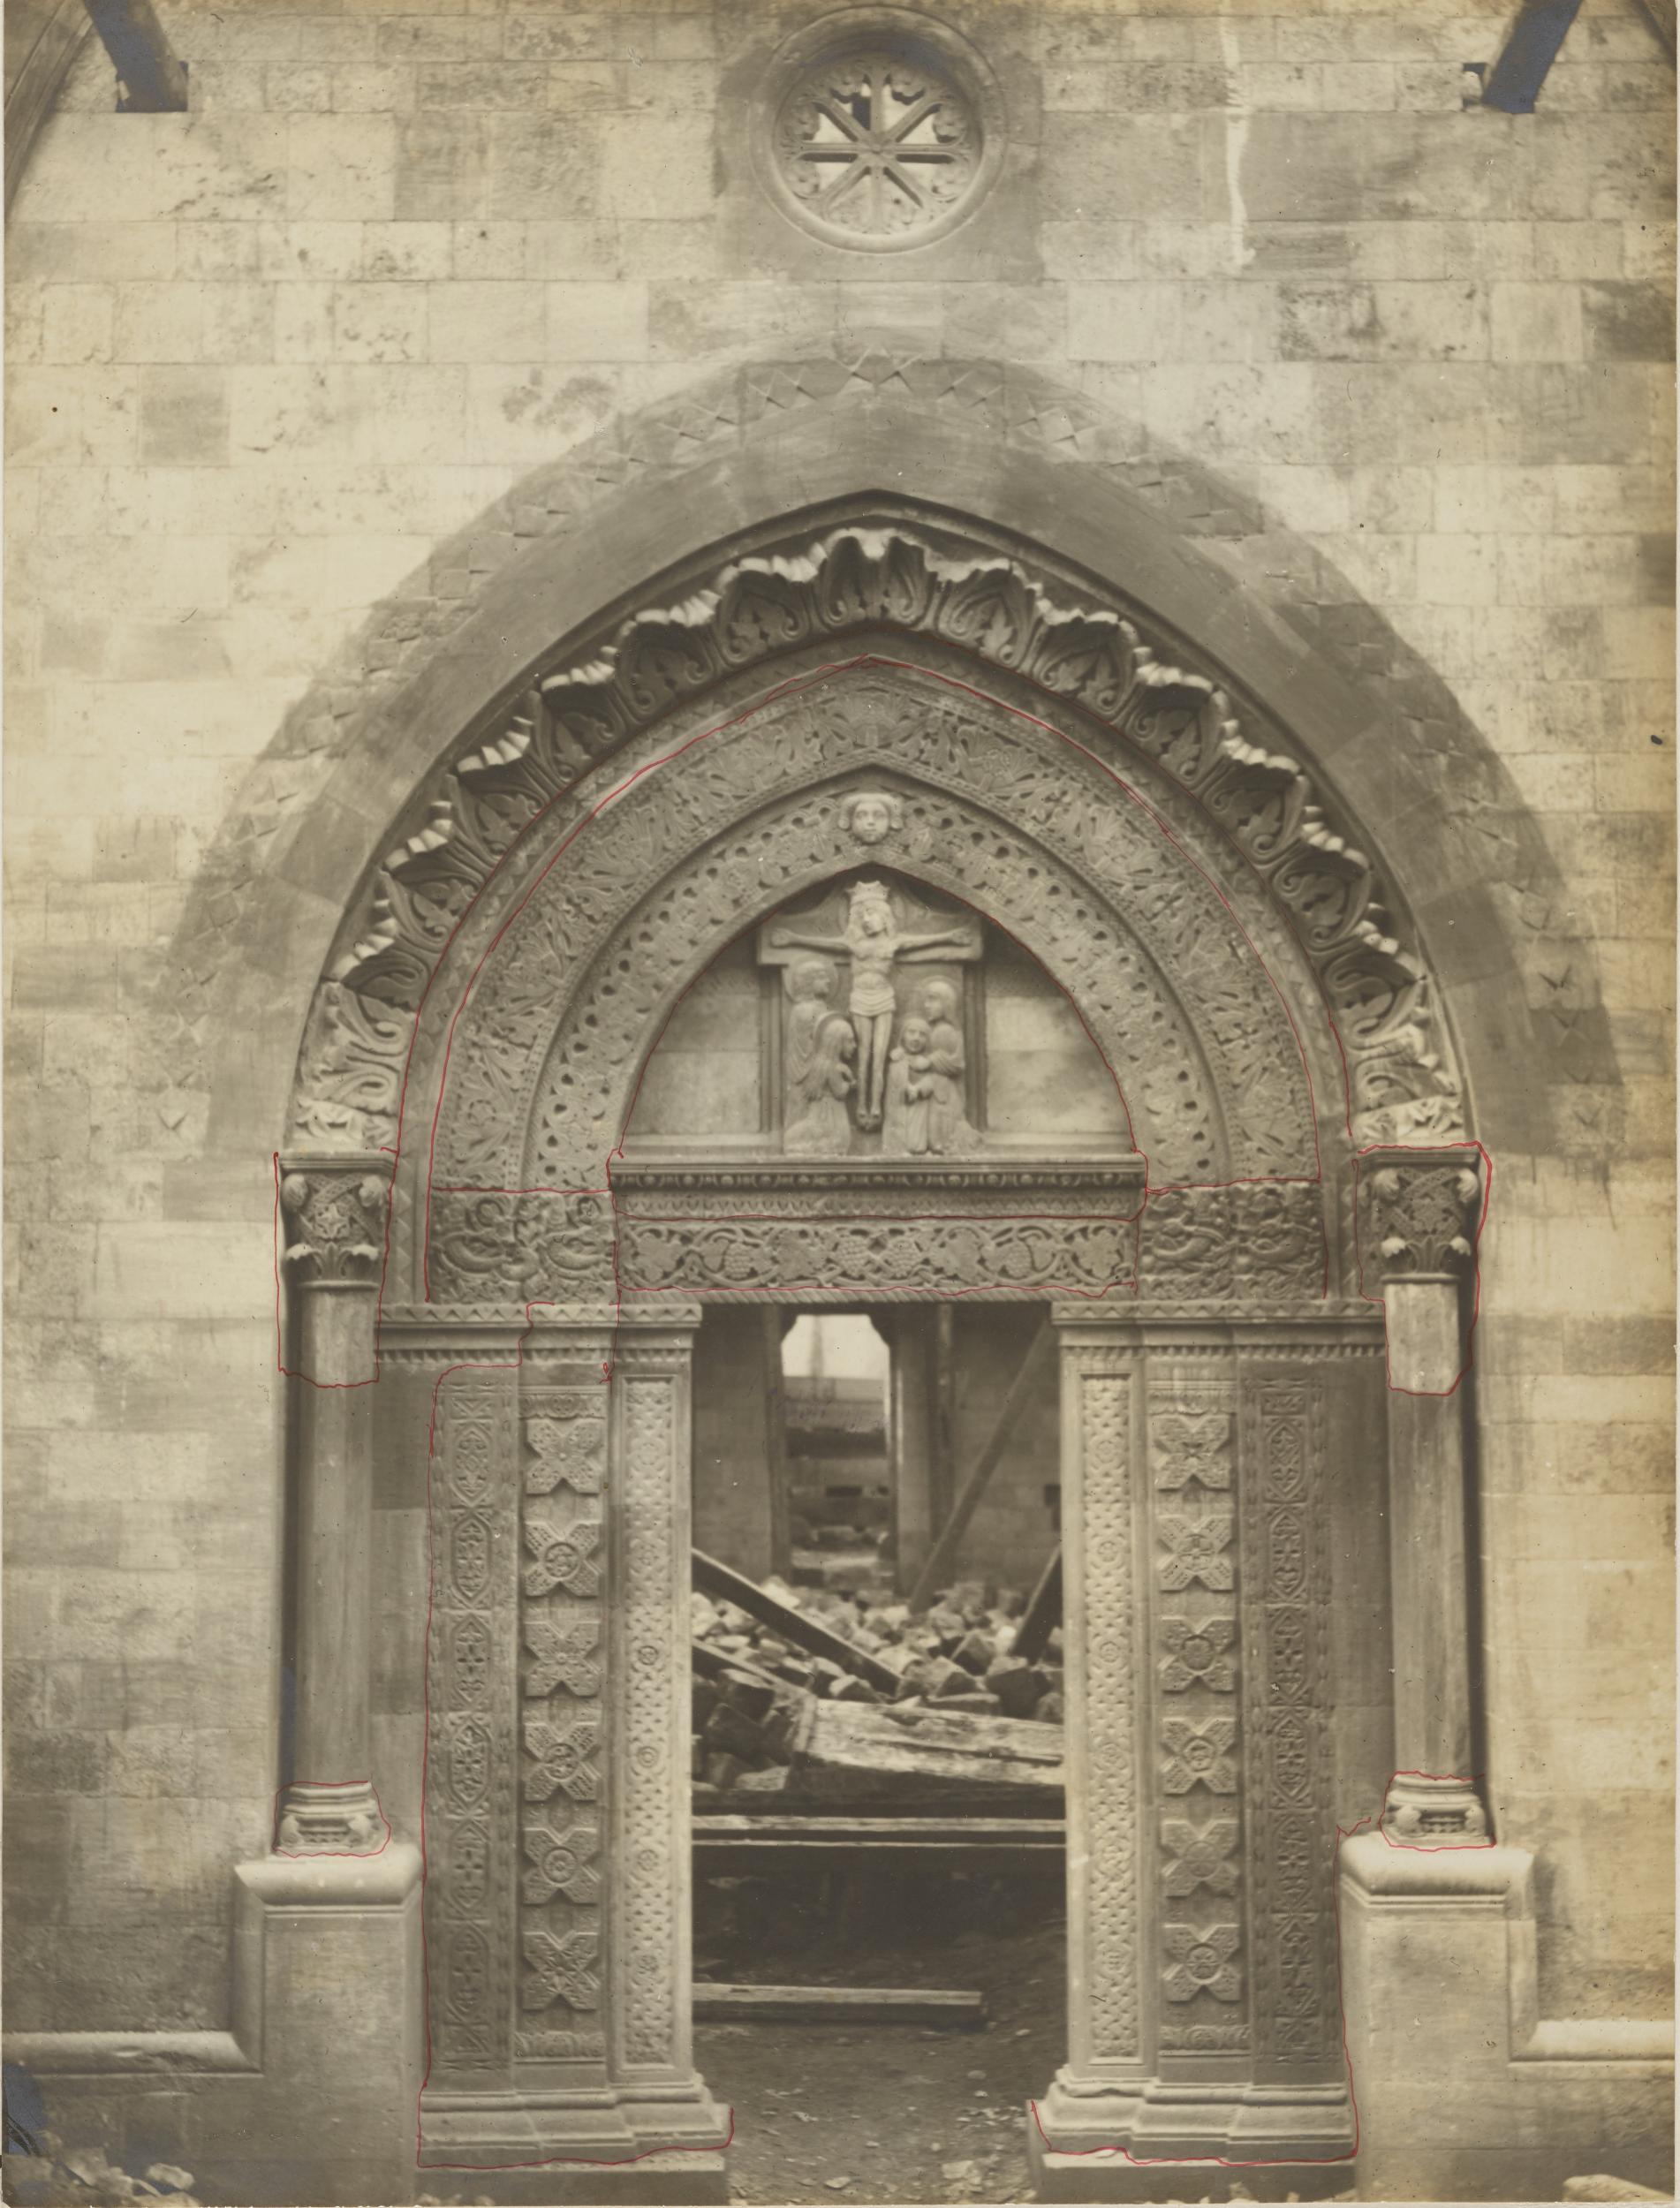 Fotografo non identificato, Conversano - Cattedrale, portale laterale, 1901-1925, gelatina ai sali d'argento/carta, MPI155332